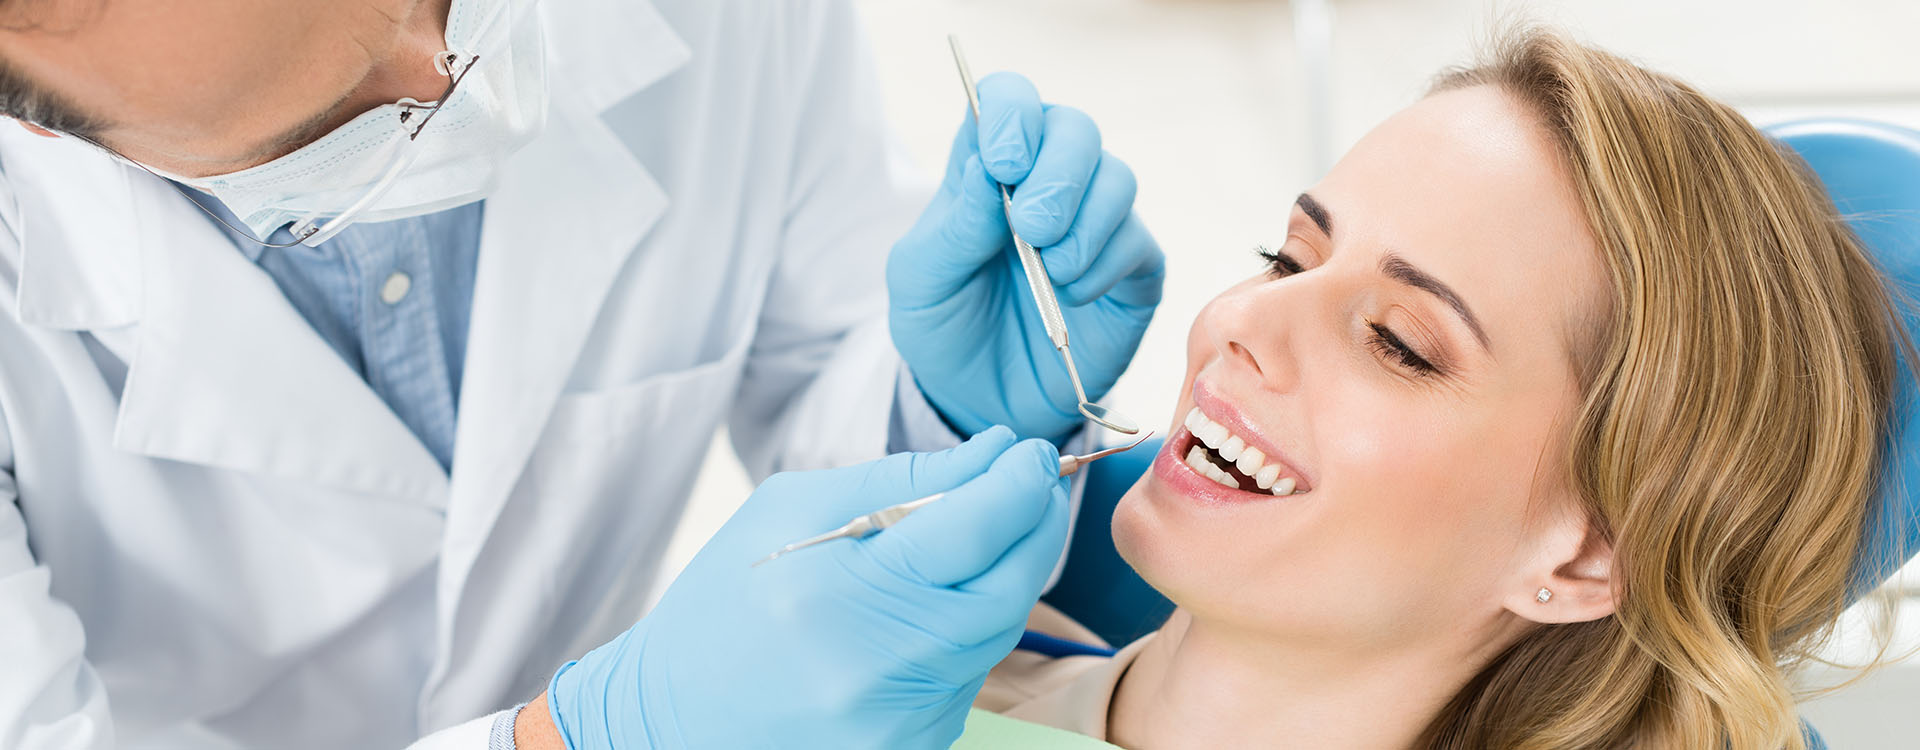 Clínica Dental Andrea Compte, tu Centro Odontológico especializado. Enfermedad periodontal en Sant Jordi. Médico tratando los dientes de la paciente en la clínica dental.